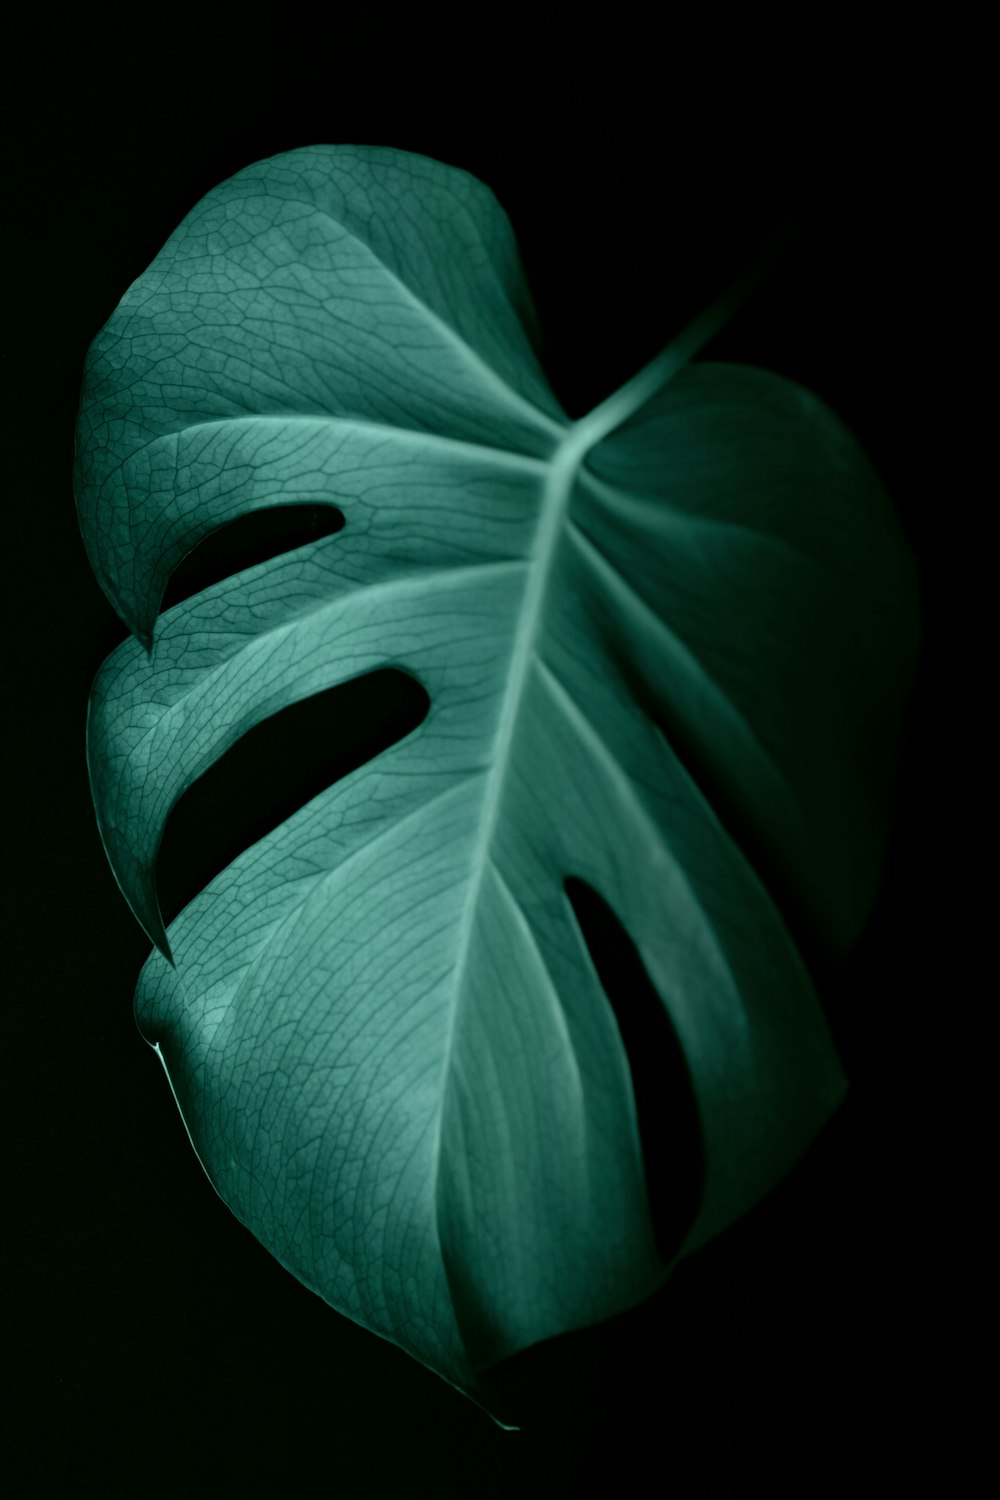 folha verde na superfície escura